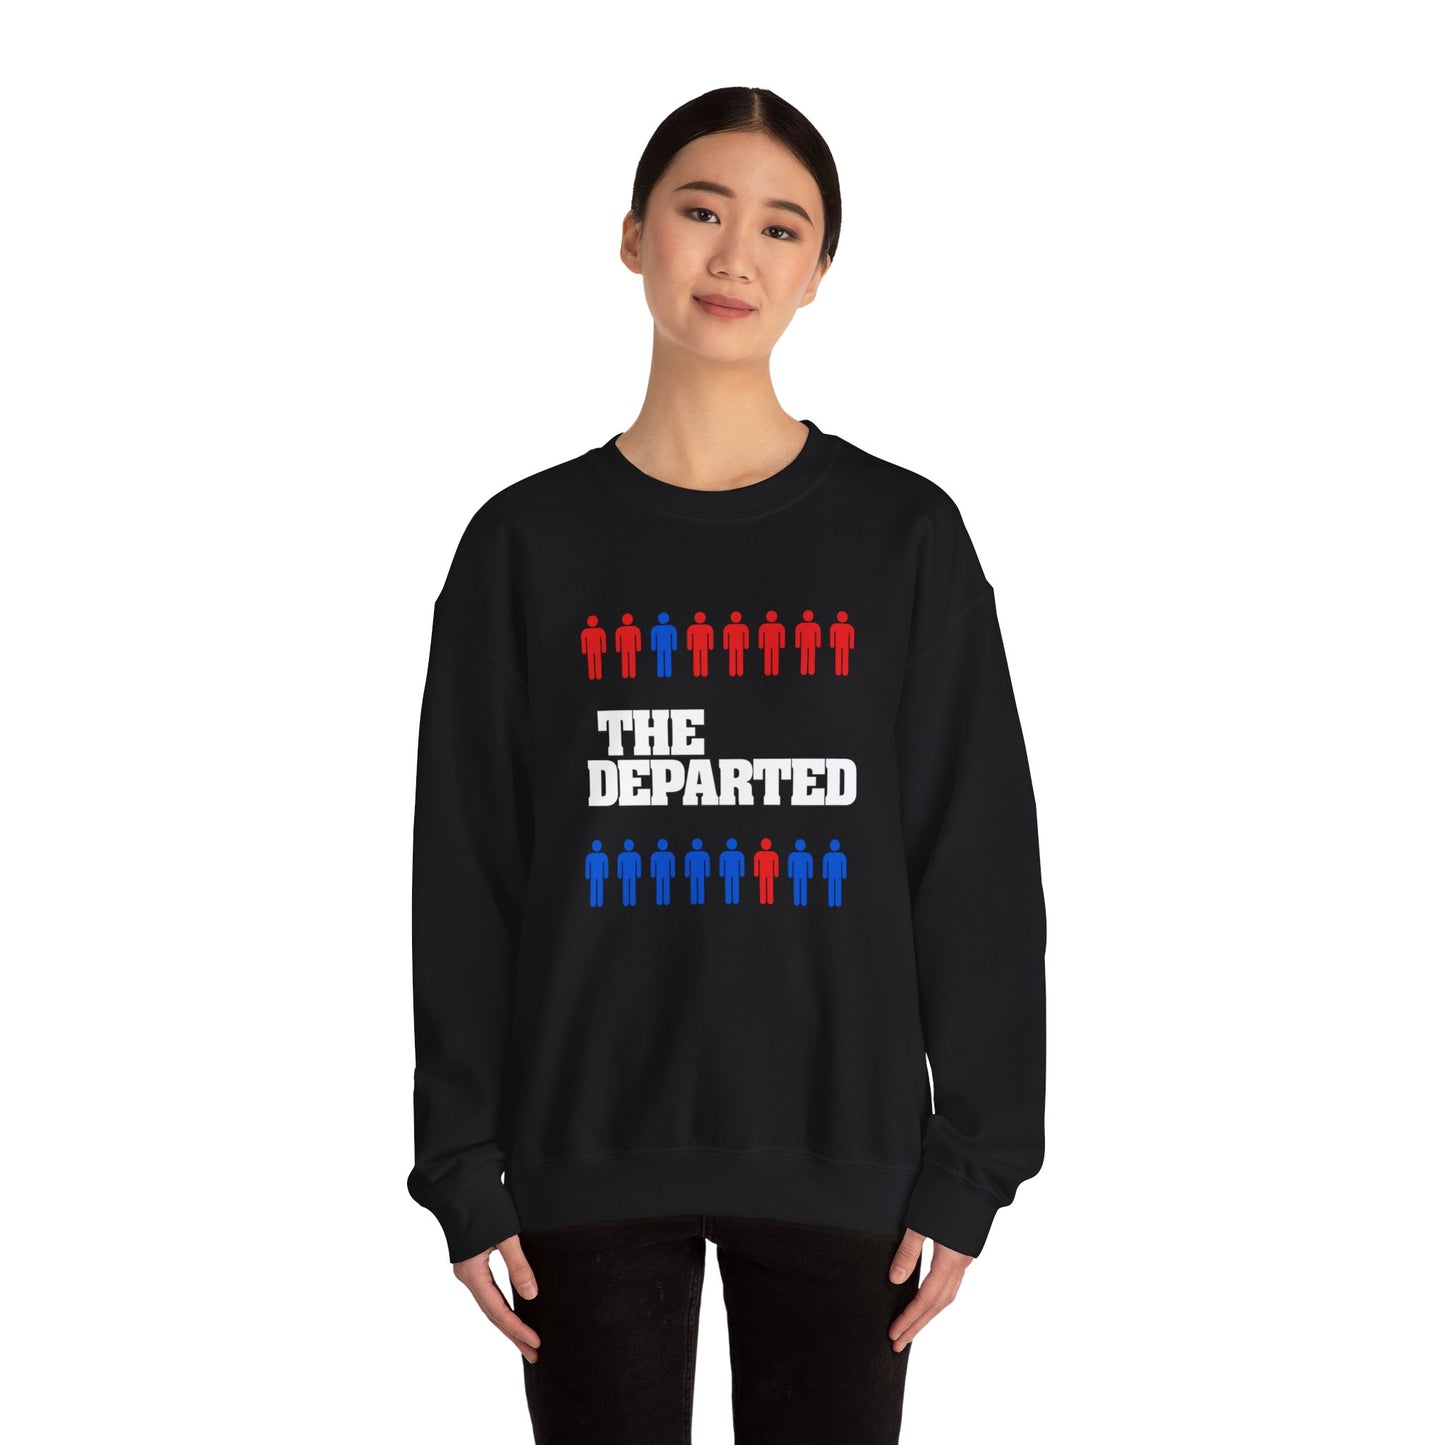 The Departed - Minimalist Printed Sweatshirt